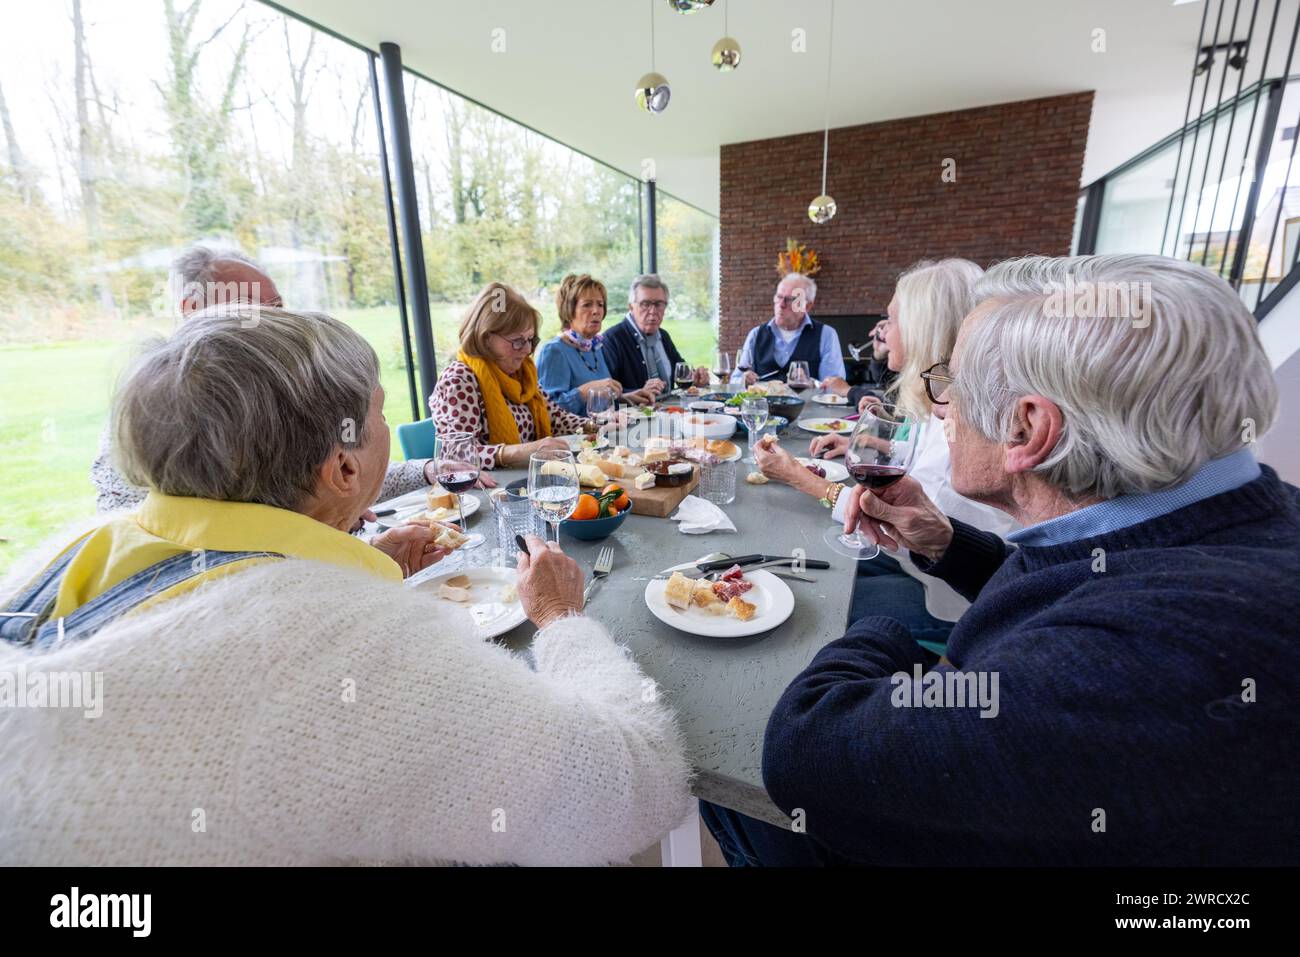 Gruppe von Erwachsenen, die sich an einem Esstisch unterhalten und gemeinsam eine Mahlzeit in einem modernen, gut beleuchteten Raum mit Blick auf die Natur genießen. Familientreffen für eine Mahlzeit in einem modernen, sonnendurchfluteten Raum. Hochwertige Fotos Stockfoto